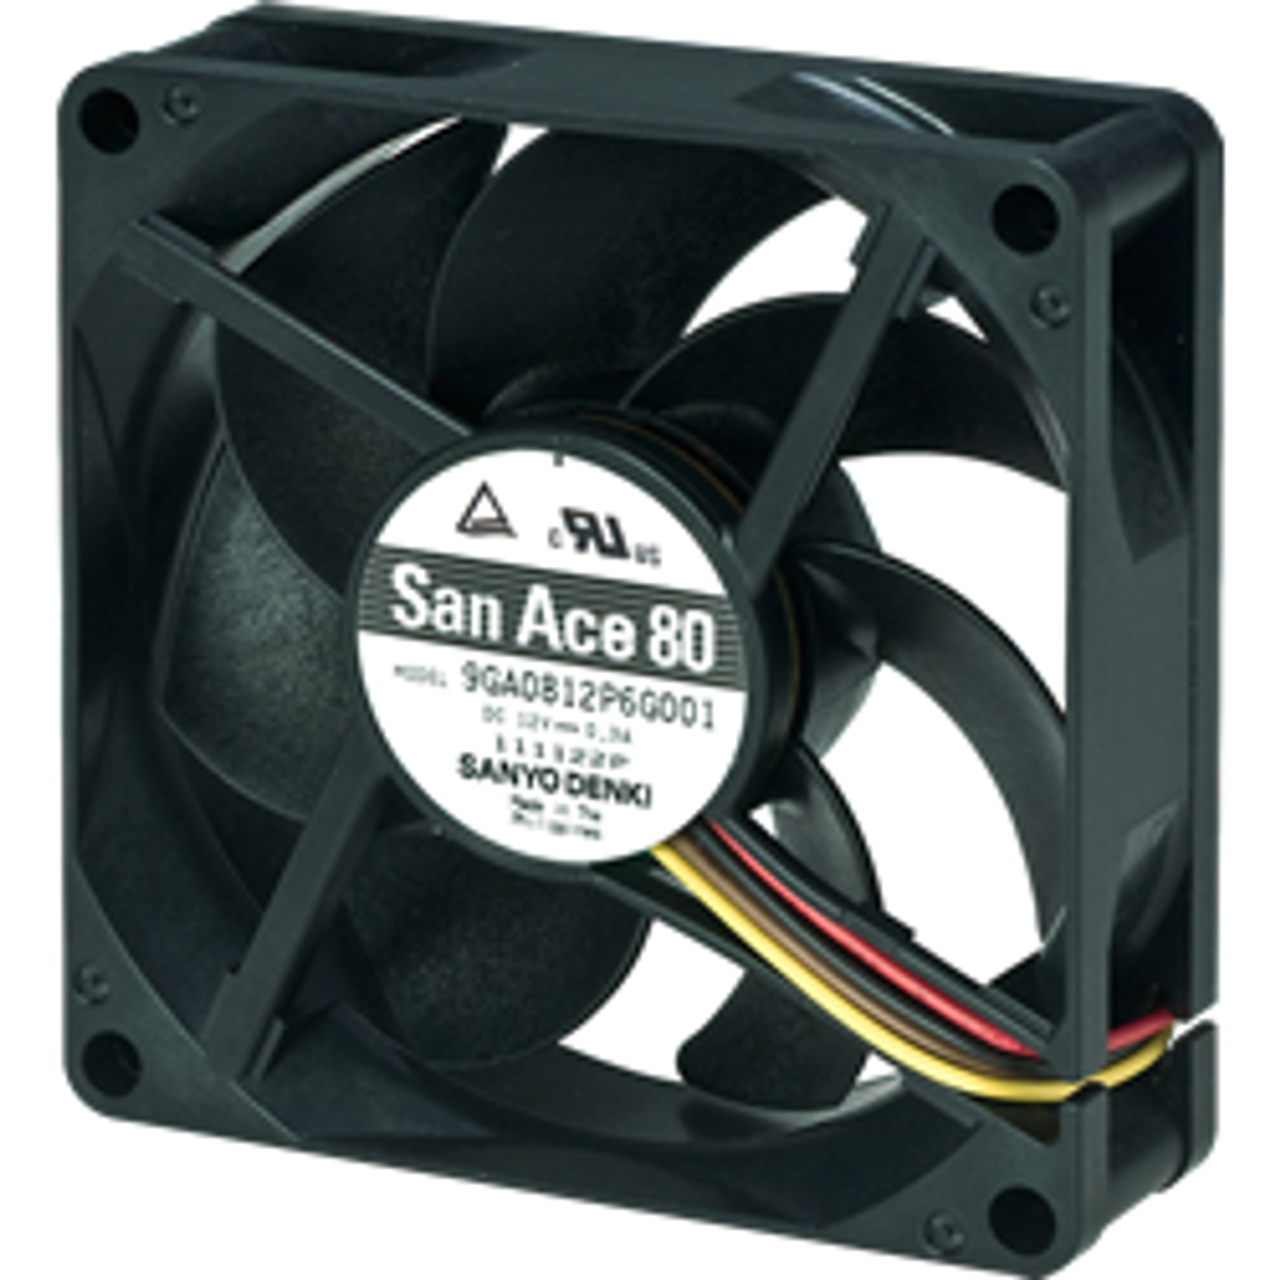 Low Power Consumption Fan  San Ace 80 Product image